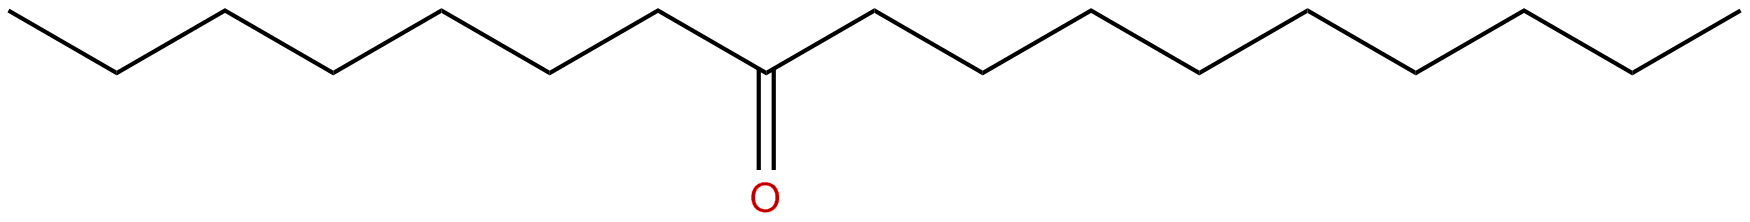 Image of 8-heptadecanone